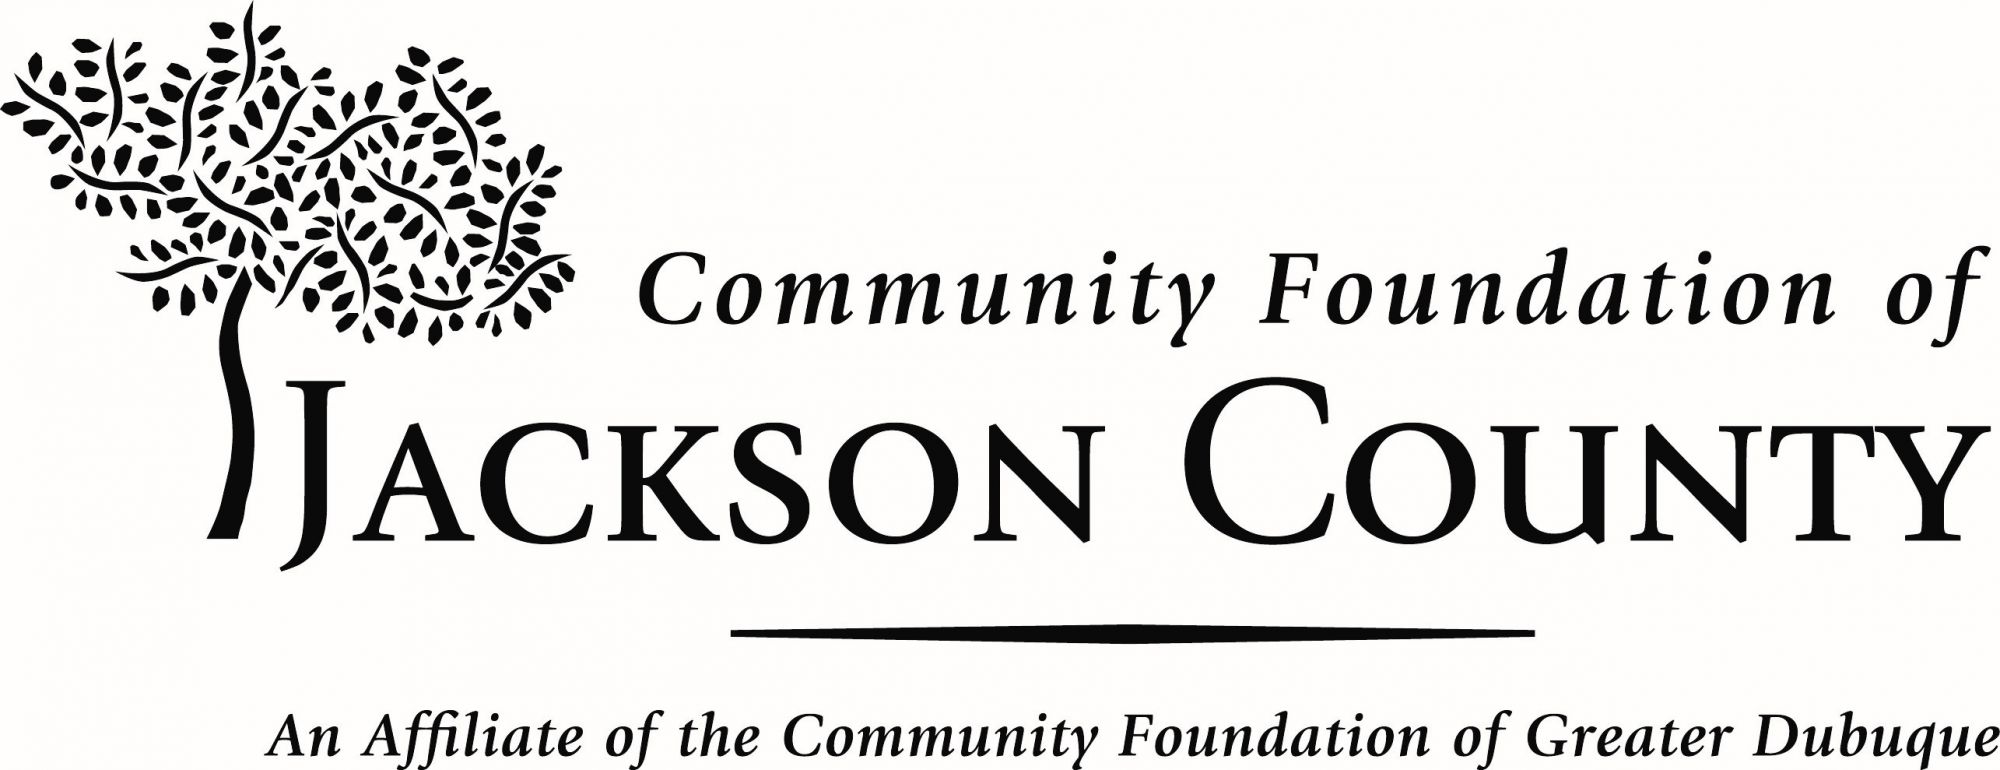 Community Foundation of Jackson County Slide Image